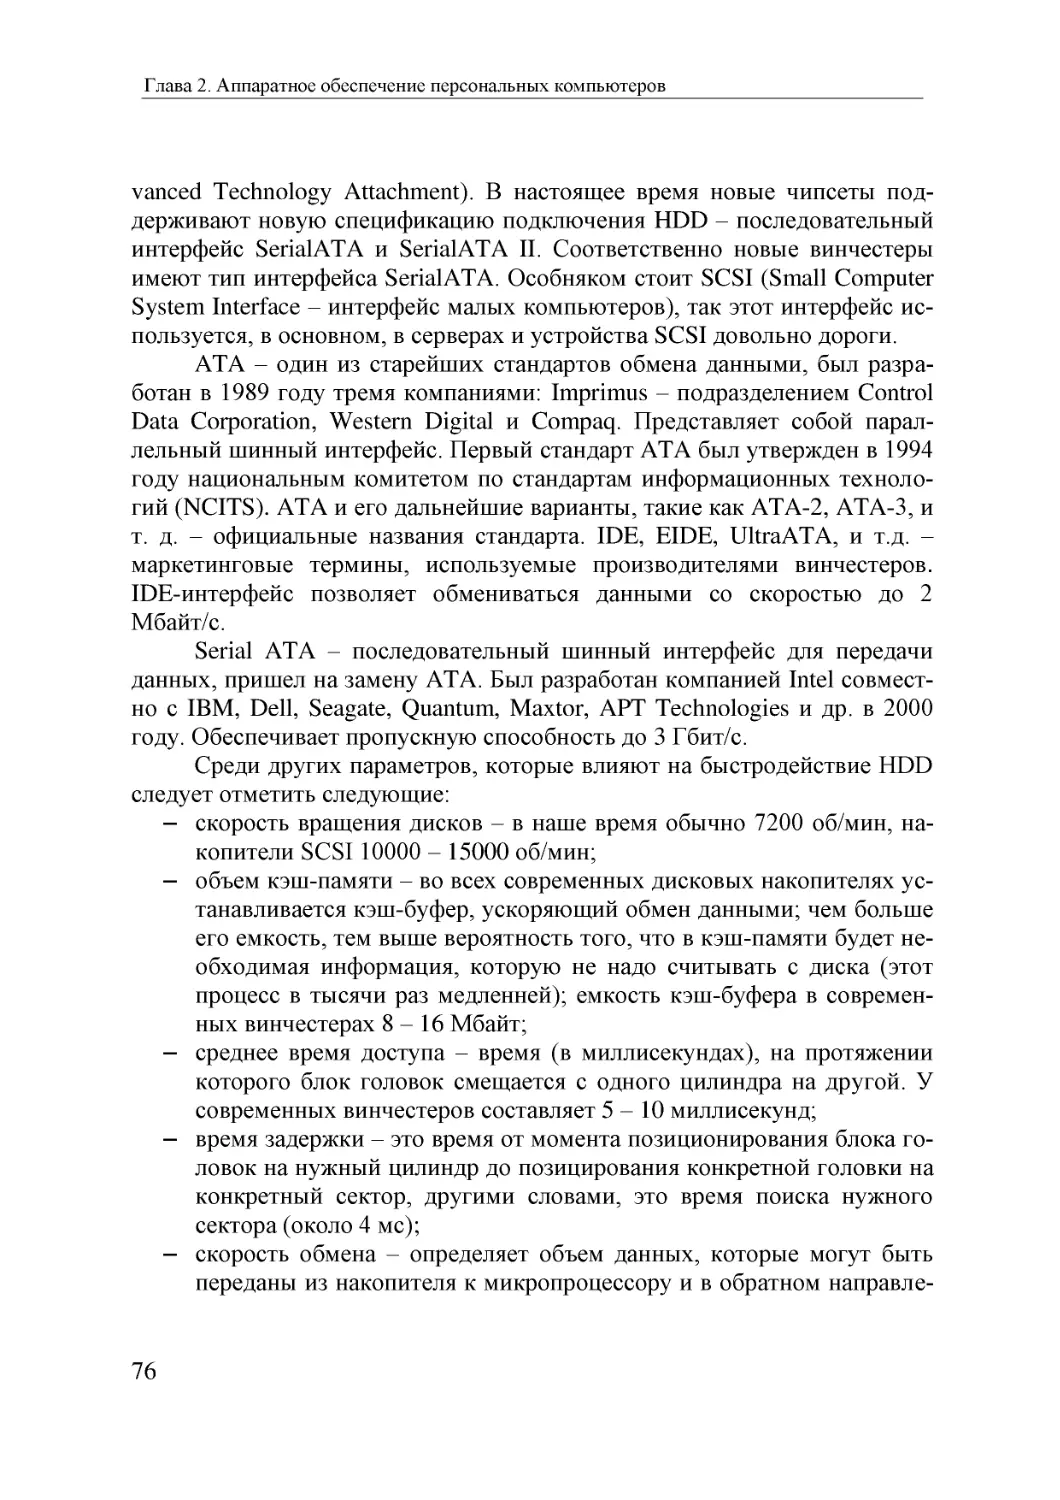 Informatika_Uchebnik_dlya_vuzov_2010 76